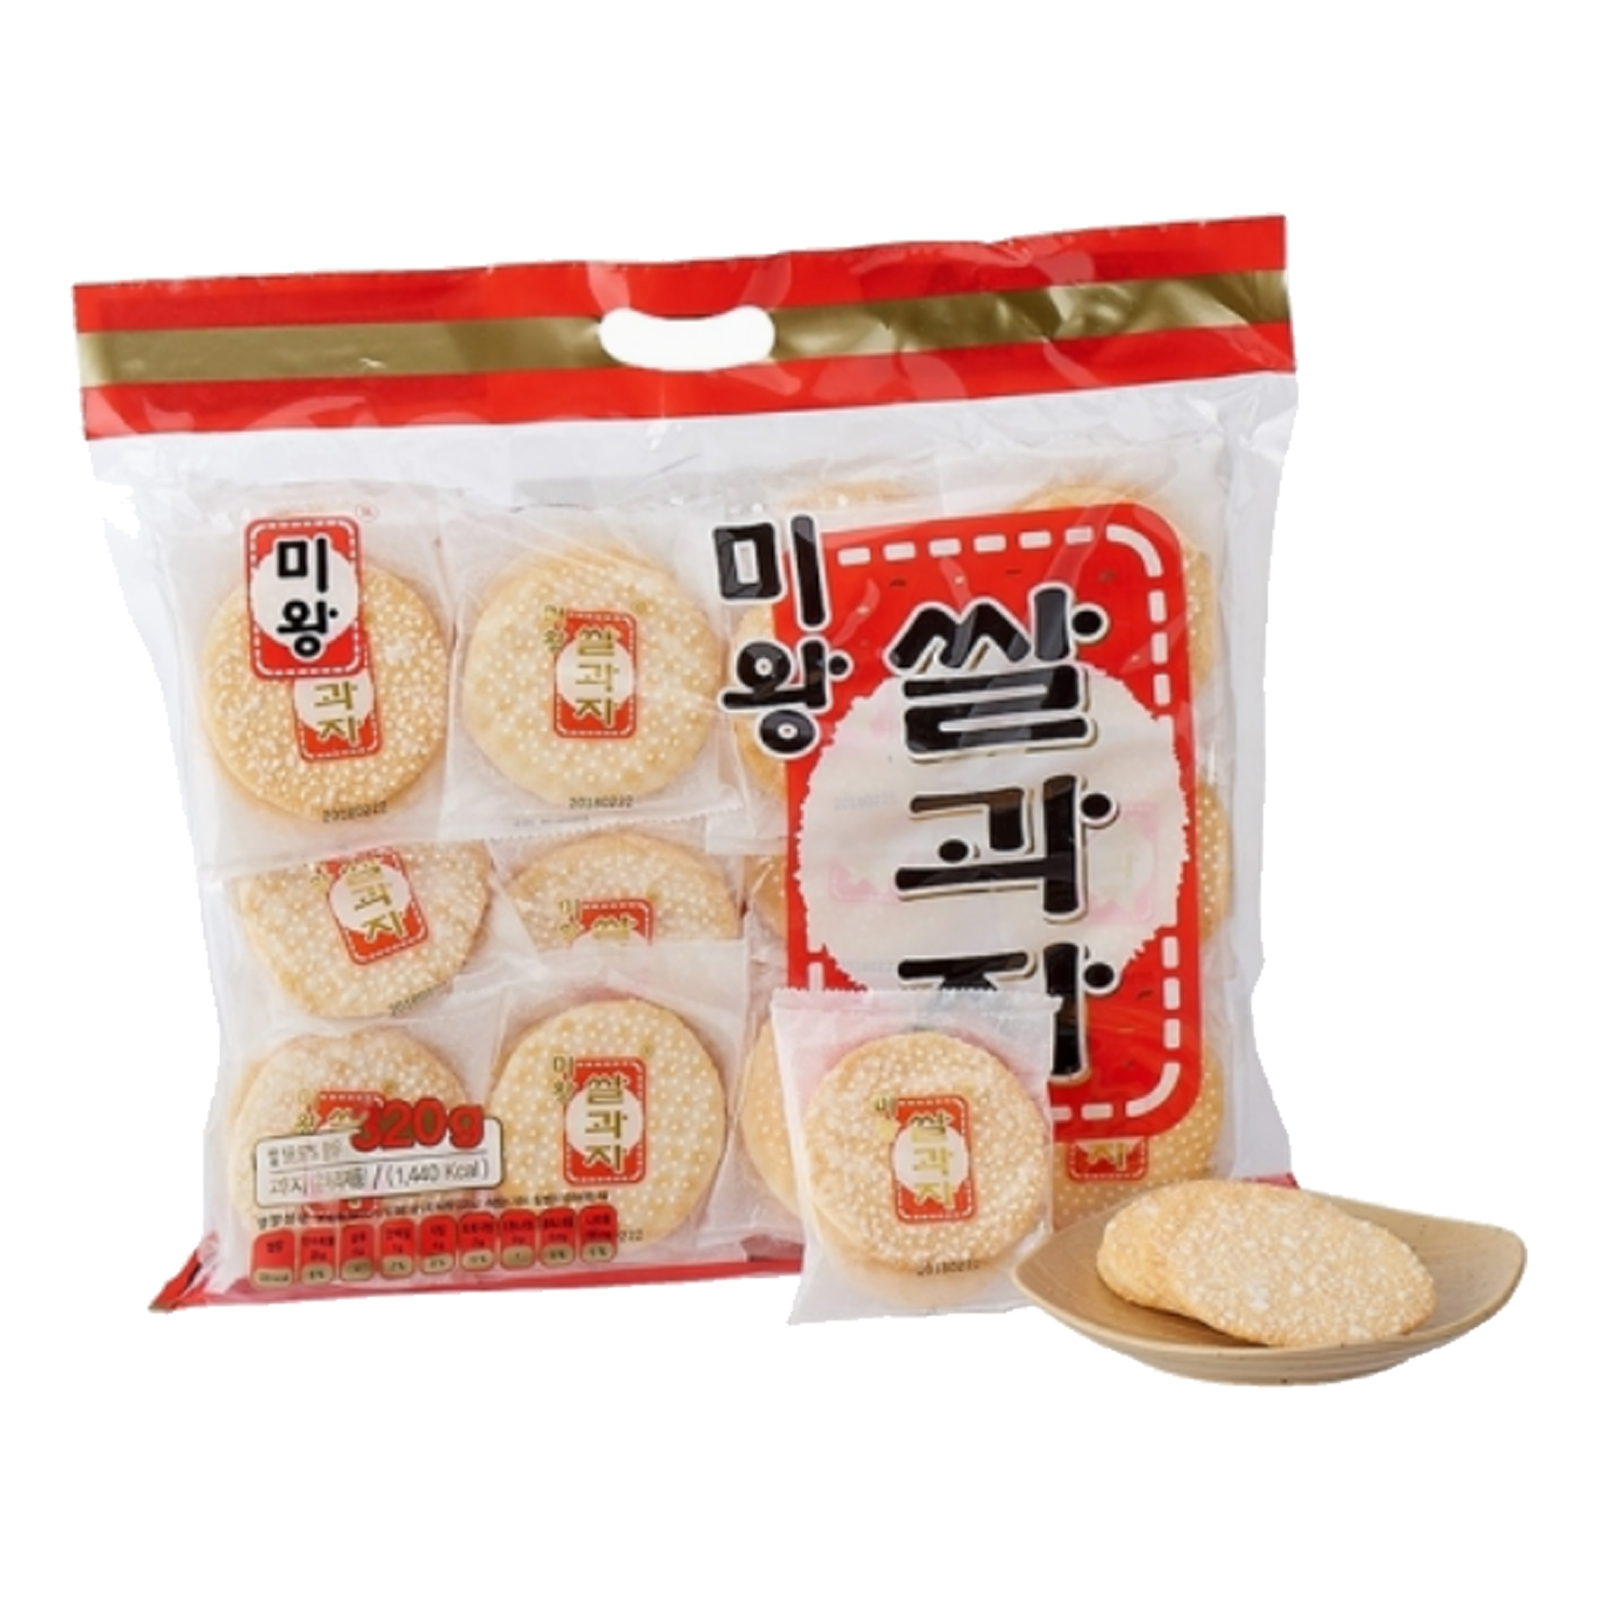 Korean Rice Crackers Naranhee On White Stock Photo 2284348725 | Shutterstock